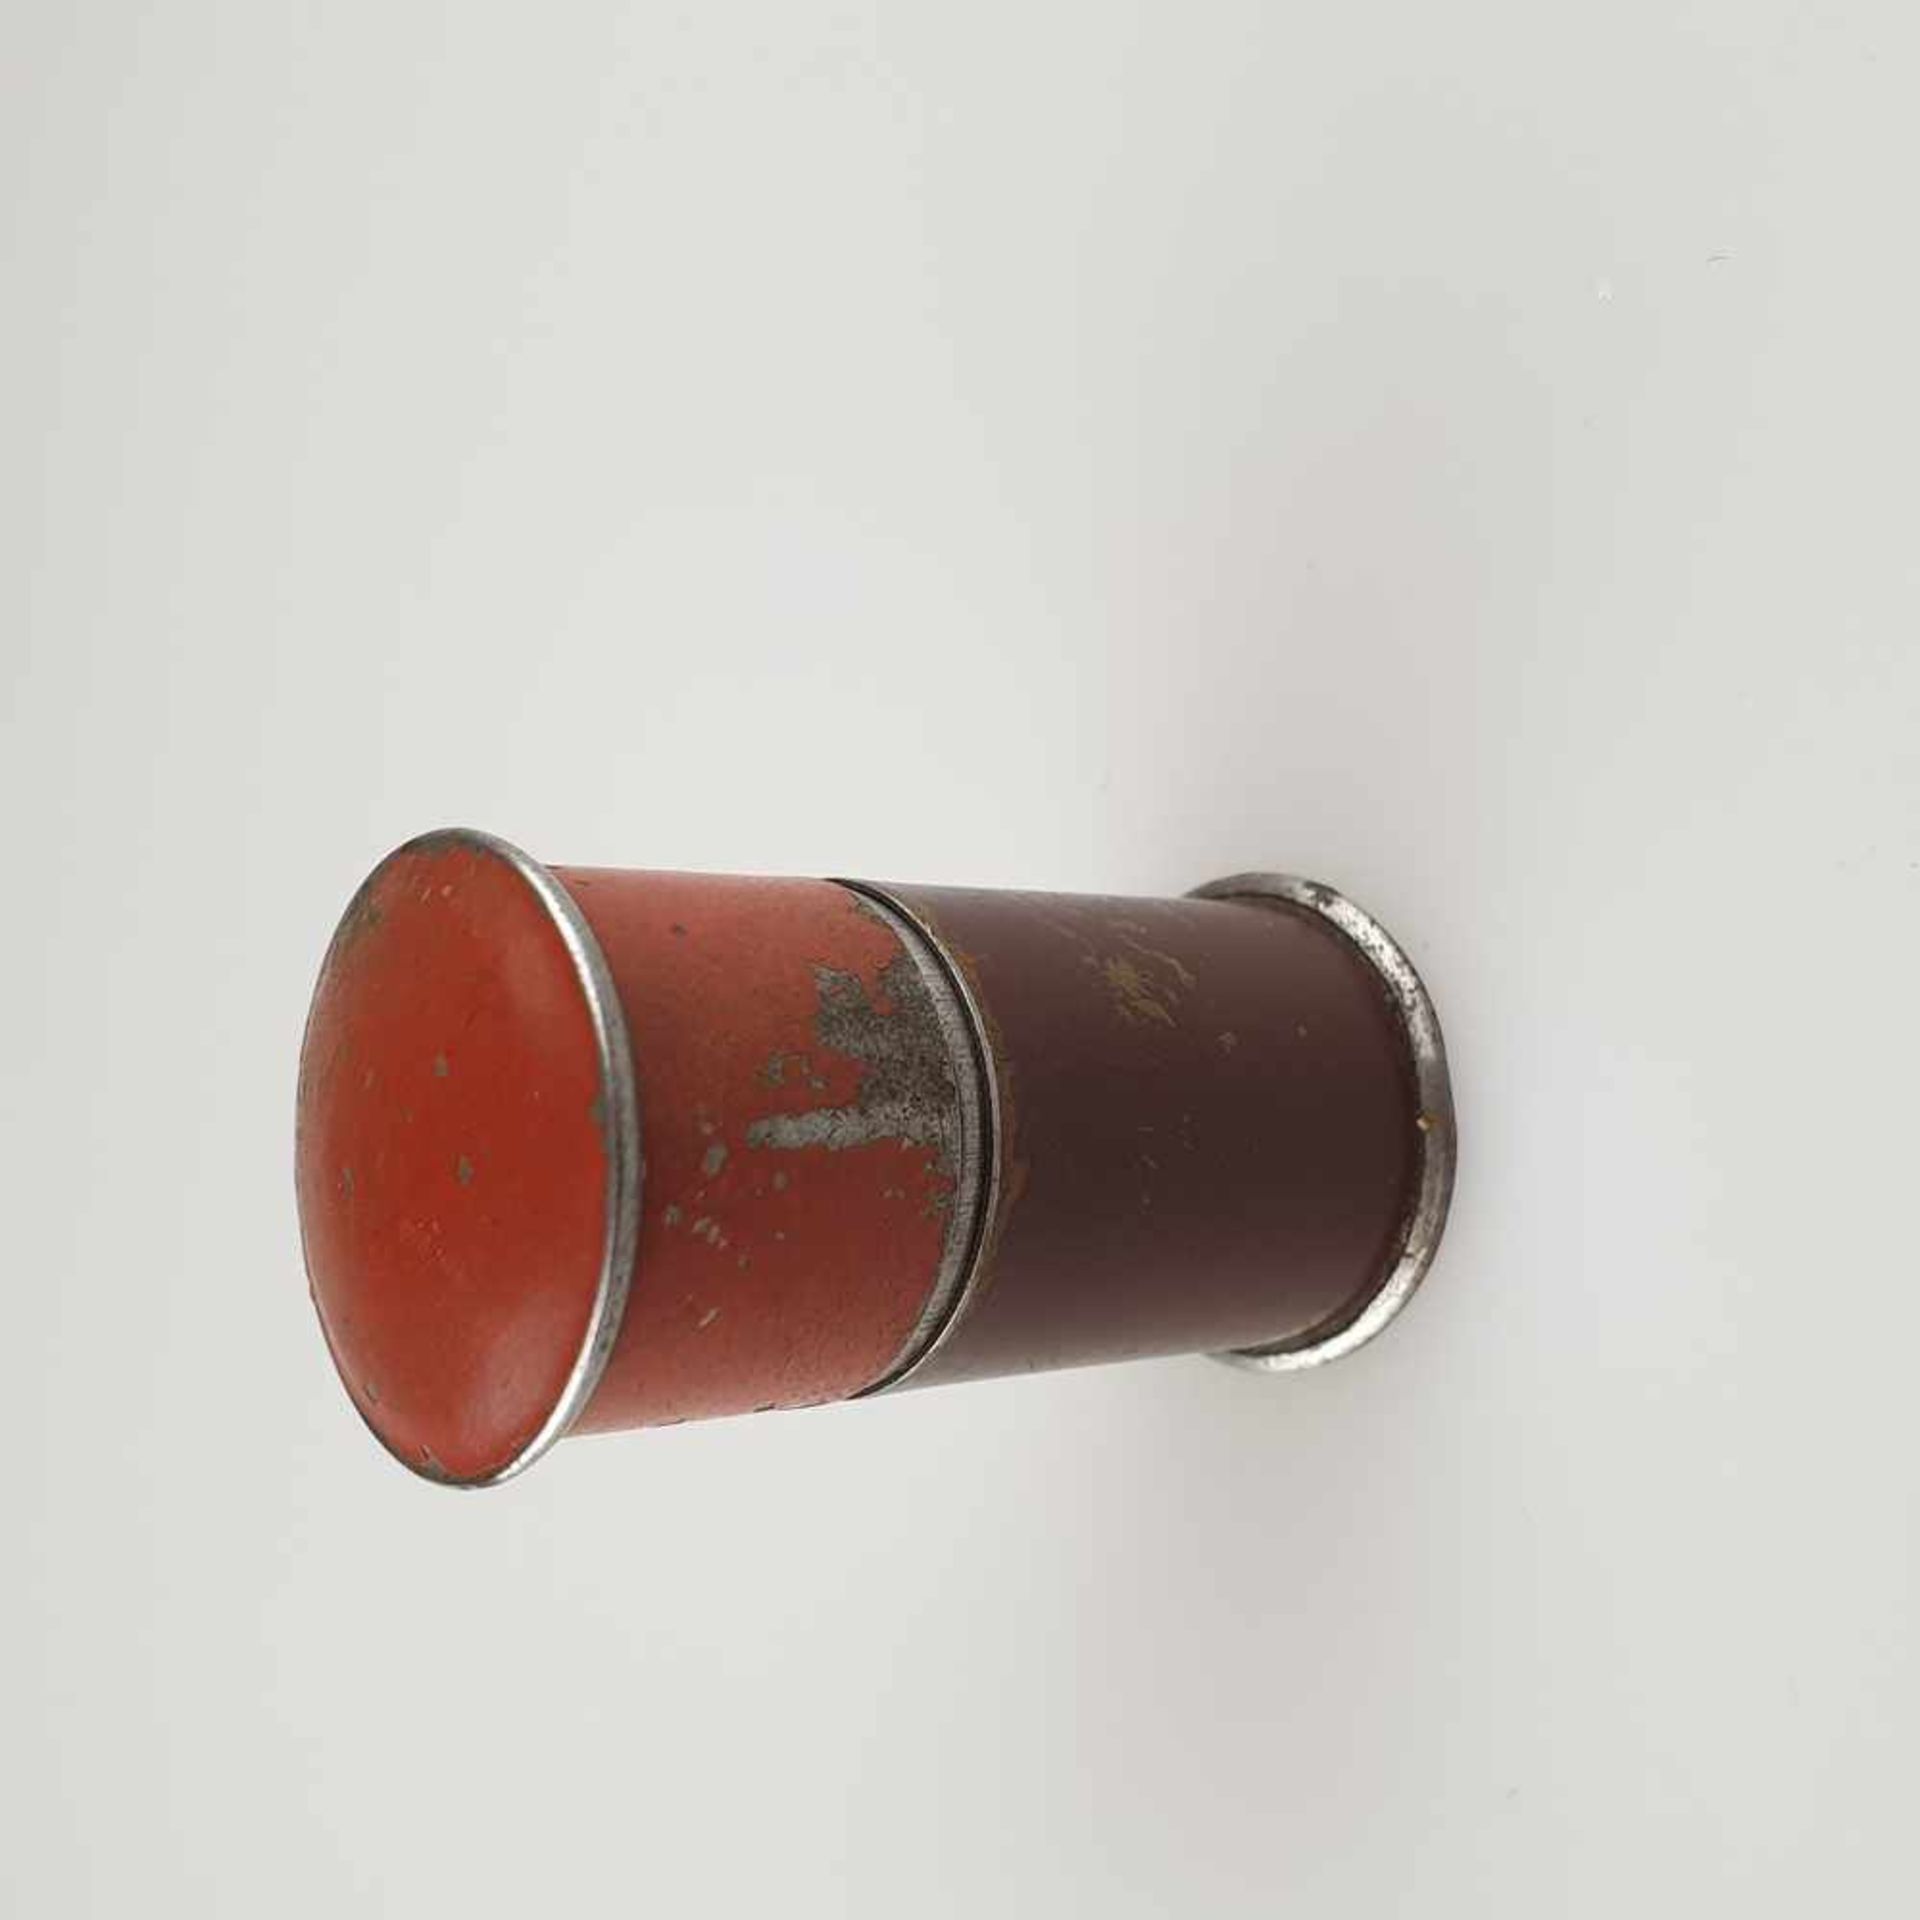 Standfeuerzeug mit Feuerstein - Metall, farbig gefasst, zylindrischer Korpus, Entwurf wohl - Bild 4 aus 5